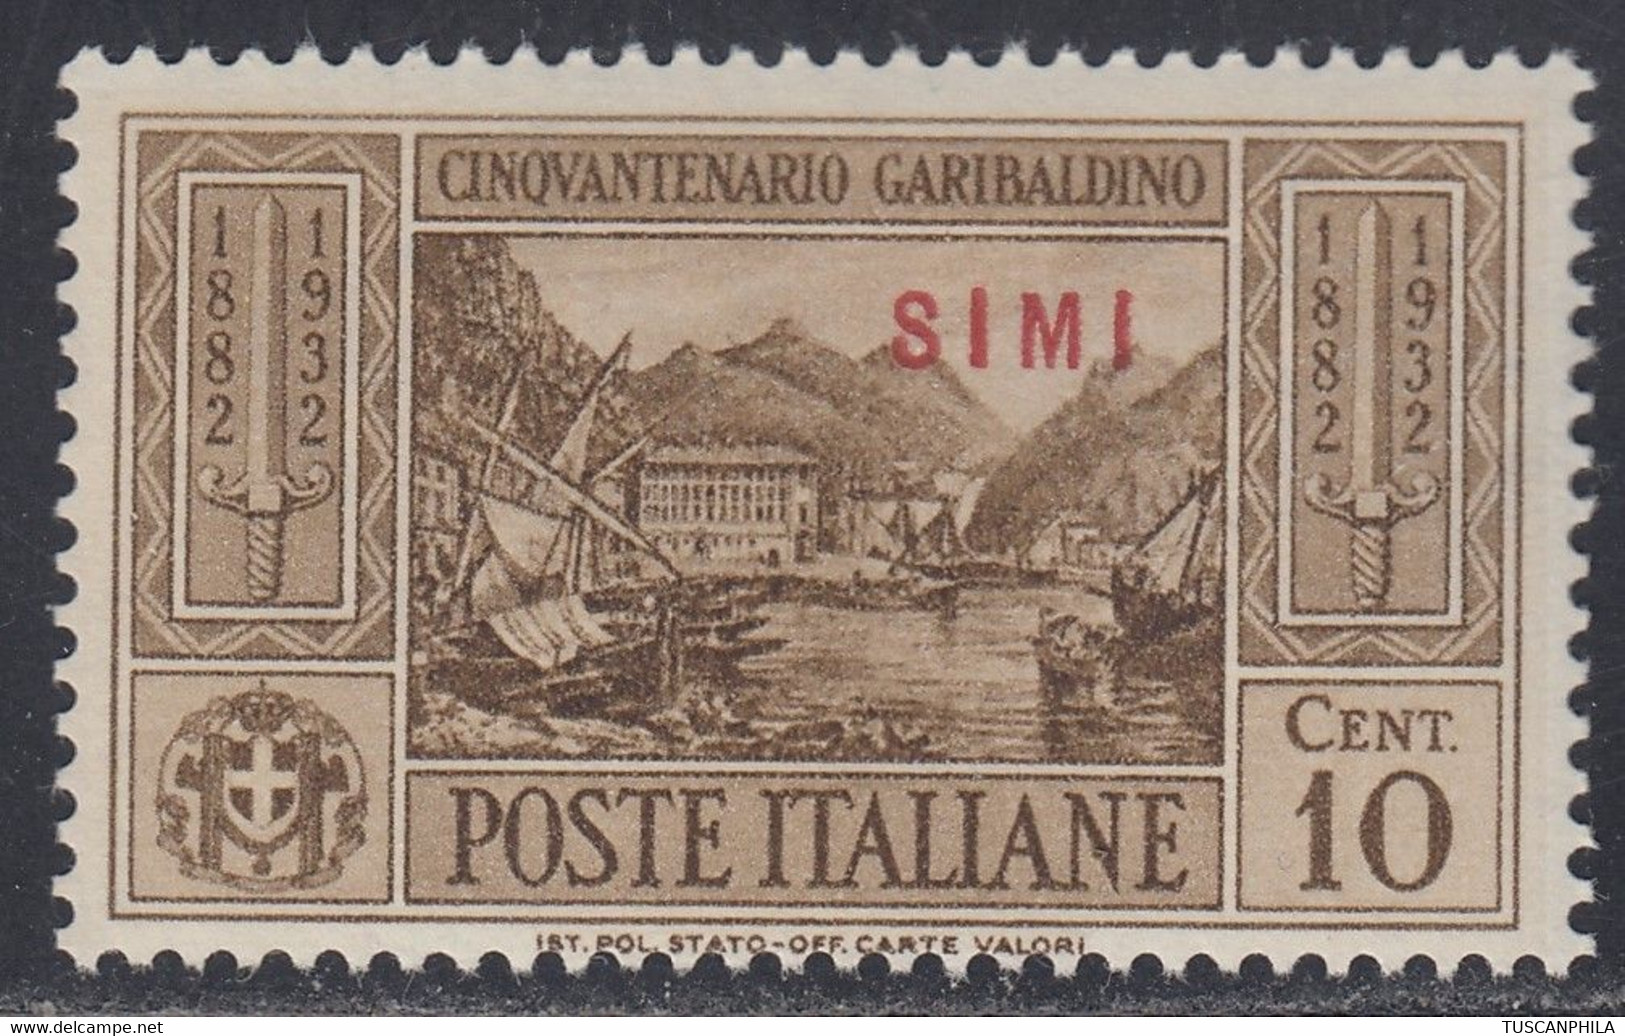 1932 Giuseppe Garibaldi 1 Val. Sass. 17 MNH** Cv 70 - Ägäis (Simi)